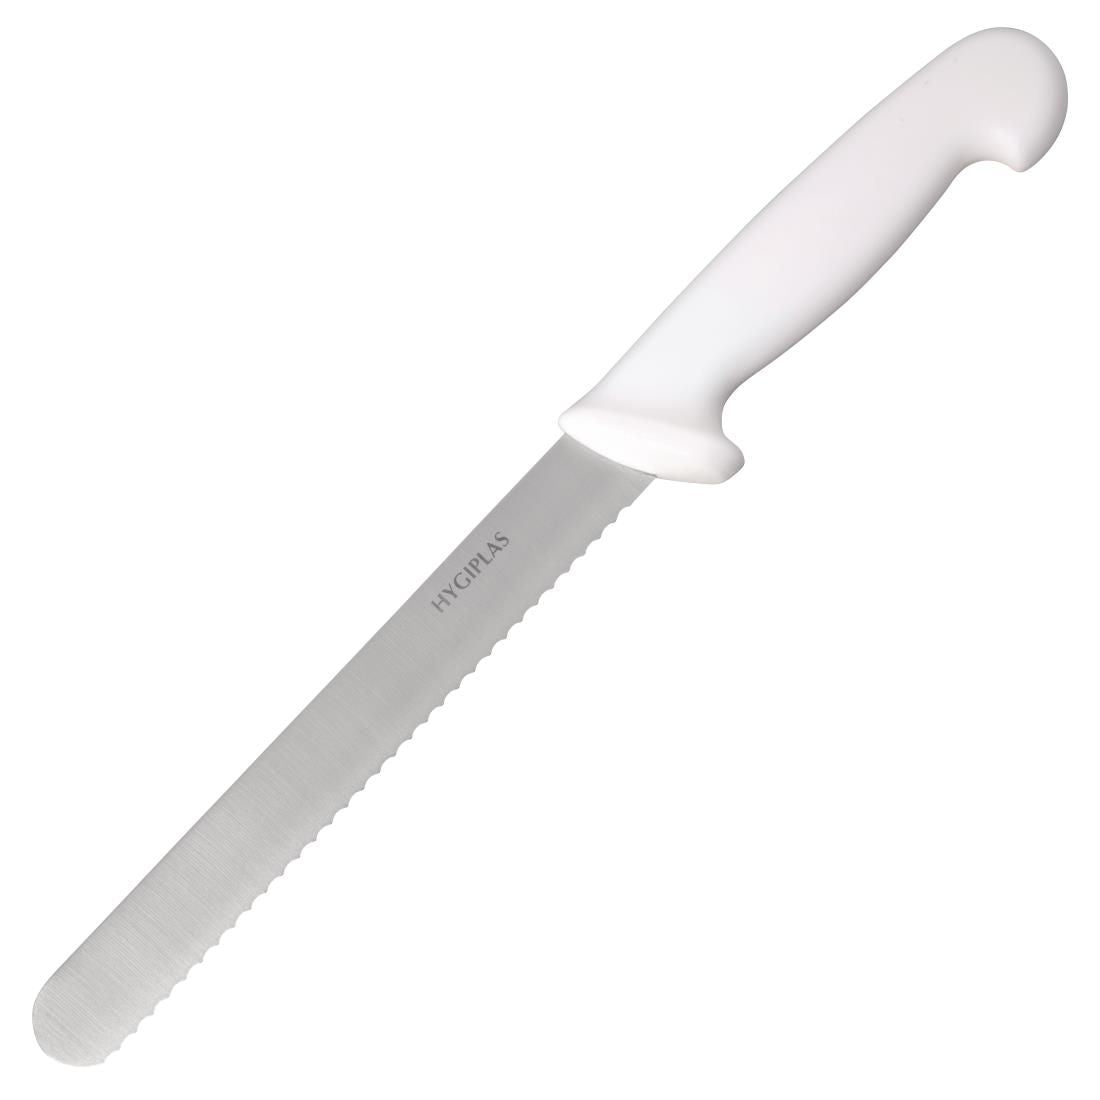 C882 Hygiplas Bread Knife White 20.5cm JD Catering Equipment Solutions Ltd